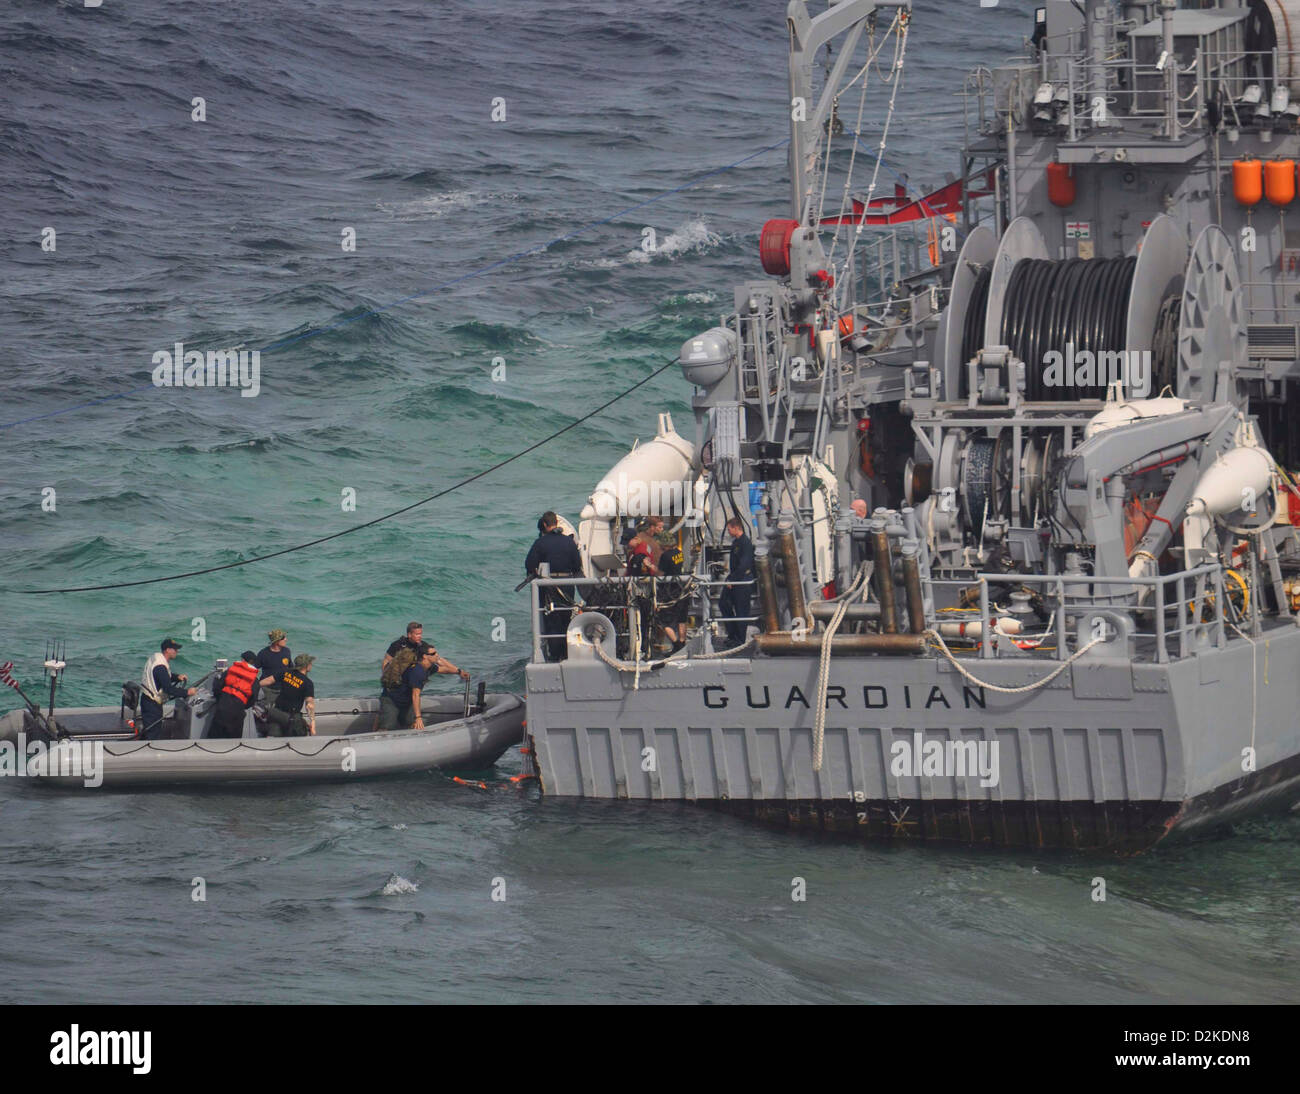 US Navy Bergung Bewertung Team-Mitglieder an Bord das Heck der USS Guardian (MCM-5), die auf Grund am Tubbataha Reef am 17. Januar lief. Operationen, das Schiff sicher zu erholen, bei gleichzeitiger Minimierung der Auswirkungen auf die Umwelt werden durchgeführt in enger Zusammenarbeit mit einem Stockfoto